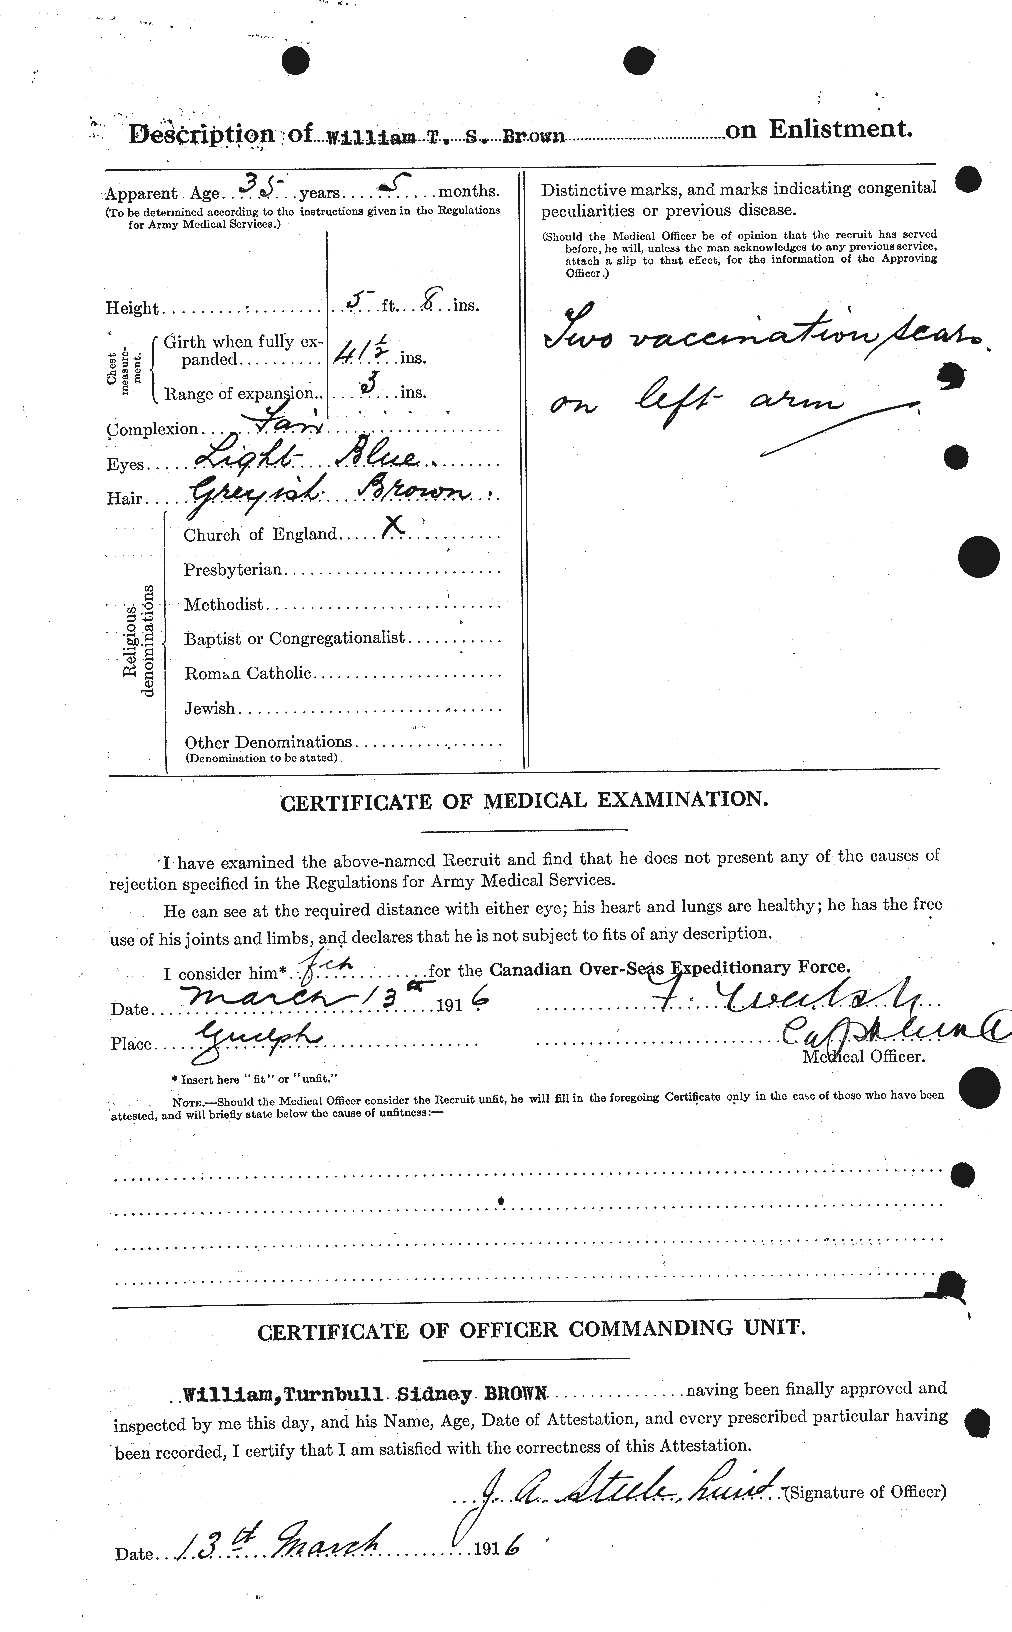 Dossiers du Personnel de la Première Guerre mondiale - CEC 270892b